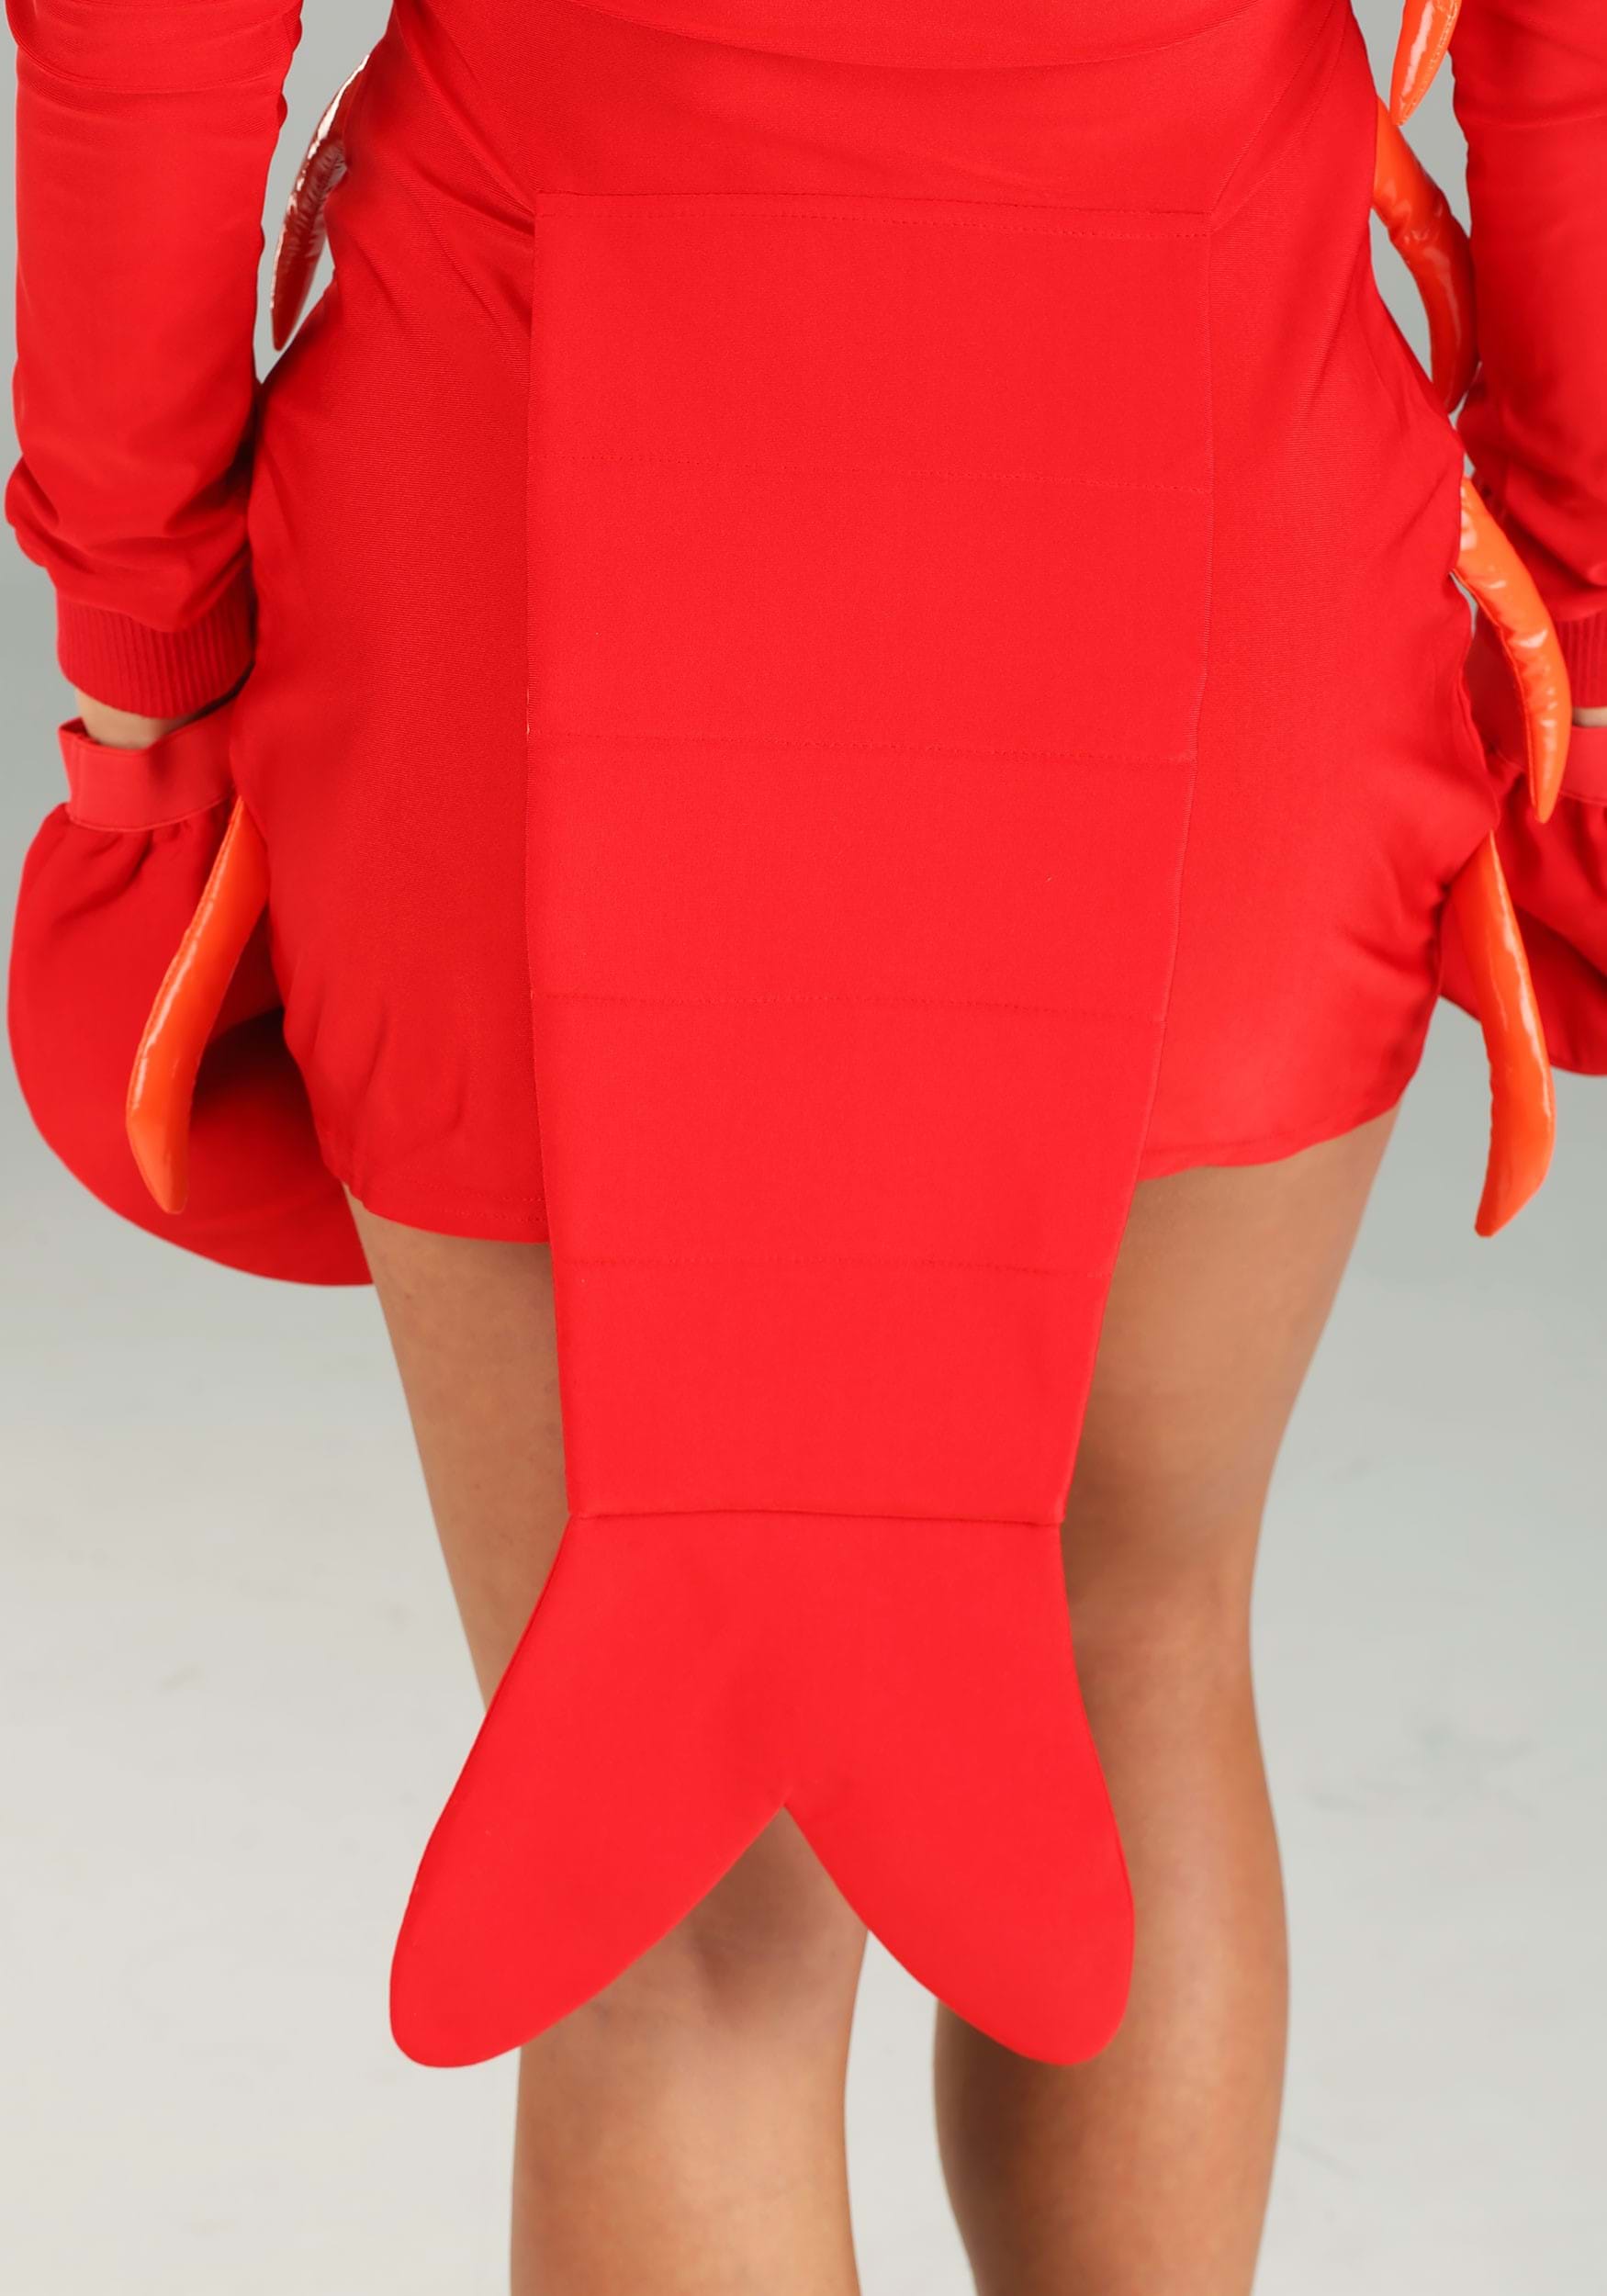 Glamorous Lobster Women's Fancy Dress Costume